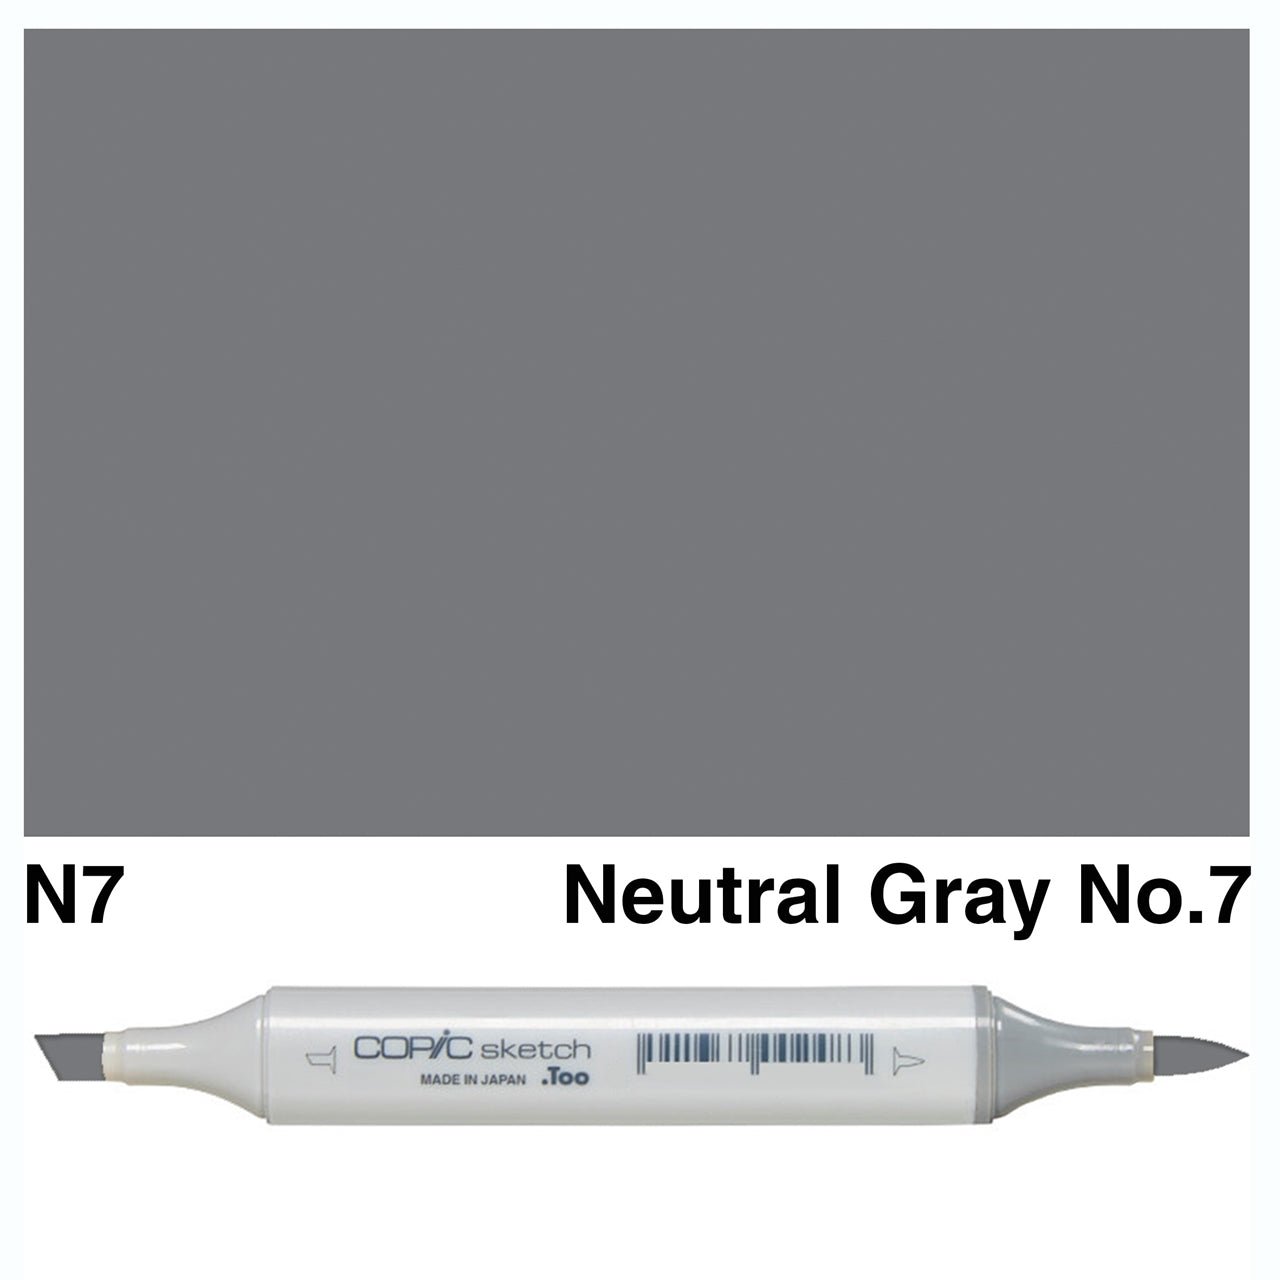 Copic Sketch N7 Neutral Gray No.7 - theartshop.com.au